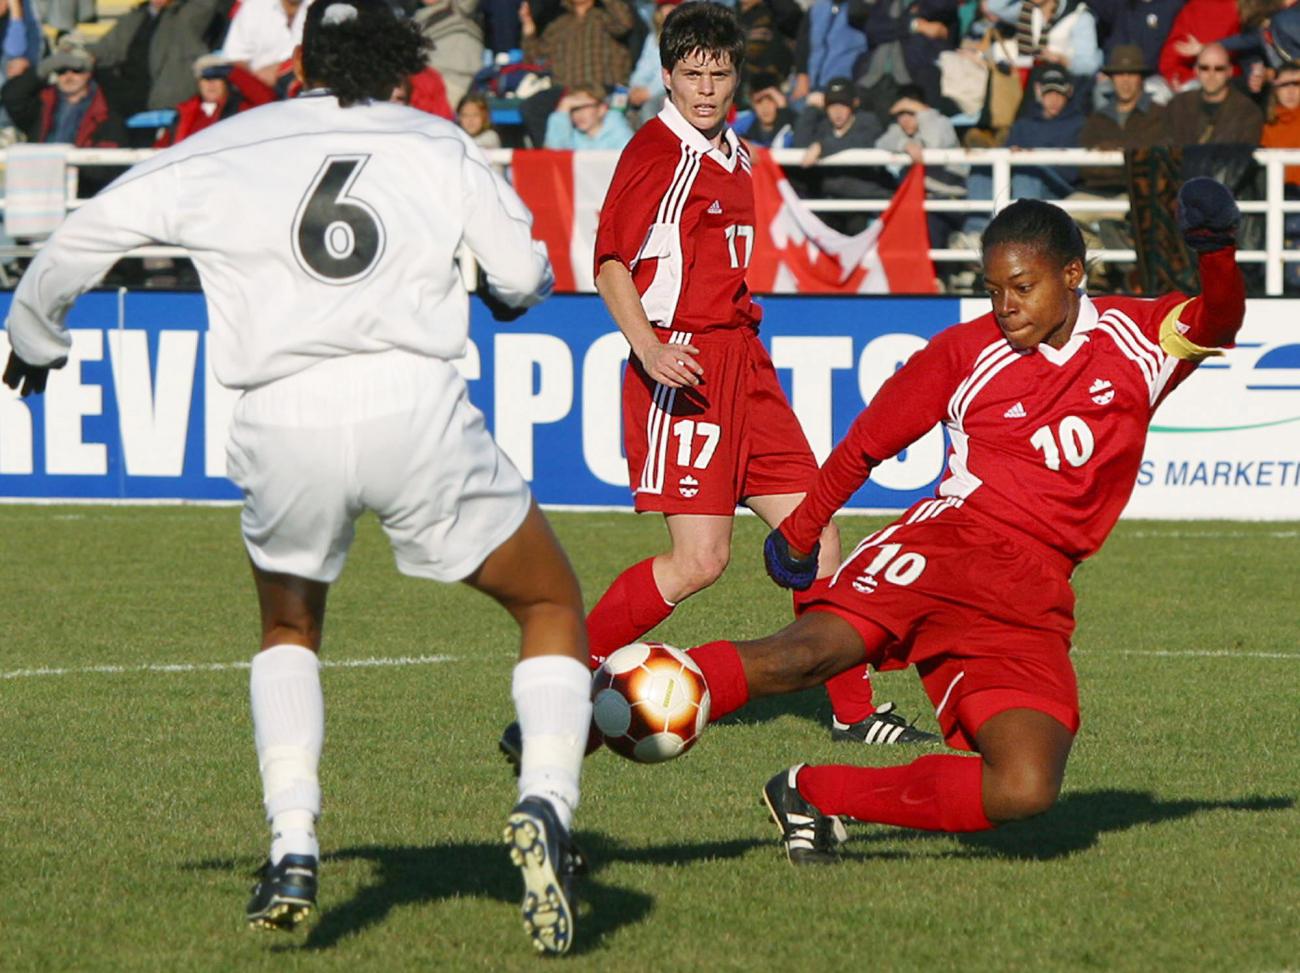 Charmaine Hooper en rouge sur un terrain de soccer avec deux autres joueuses, l’une en rouge, l’autre en blanc.